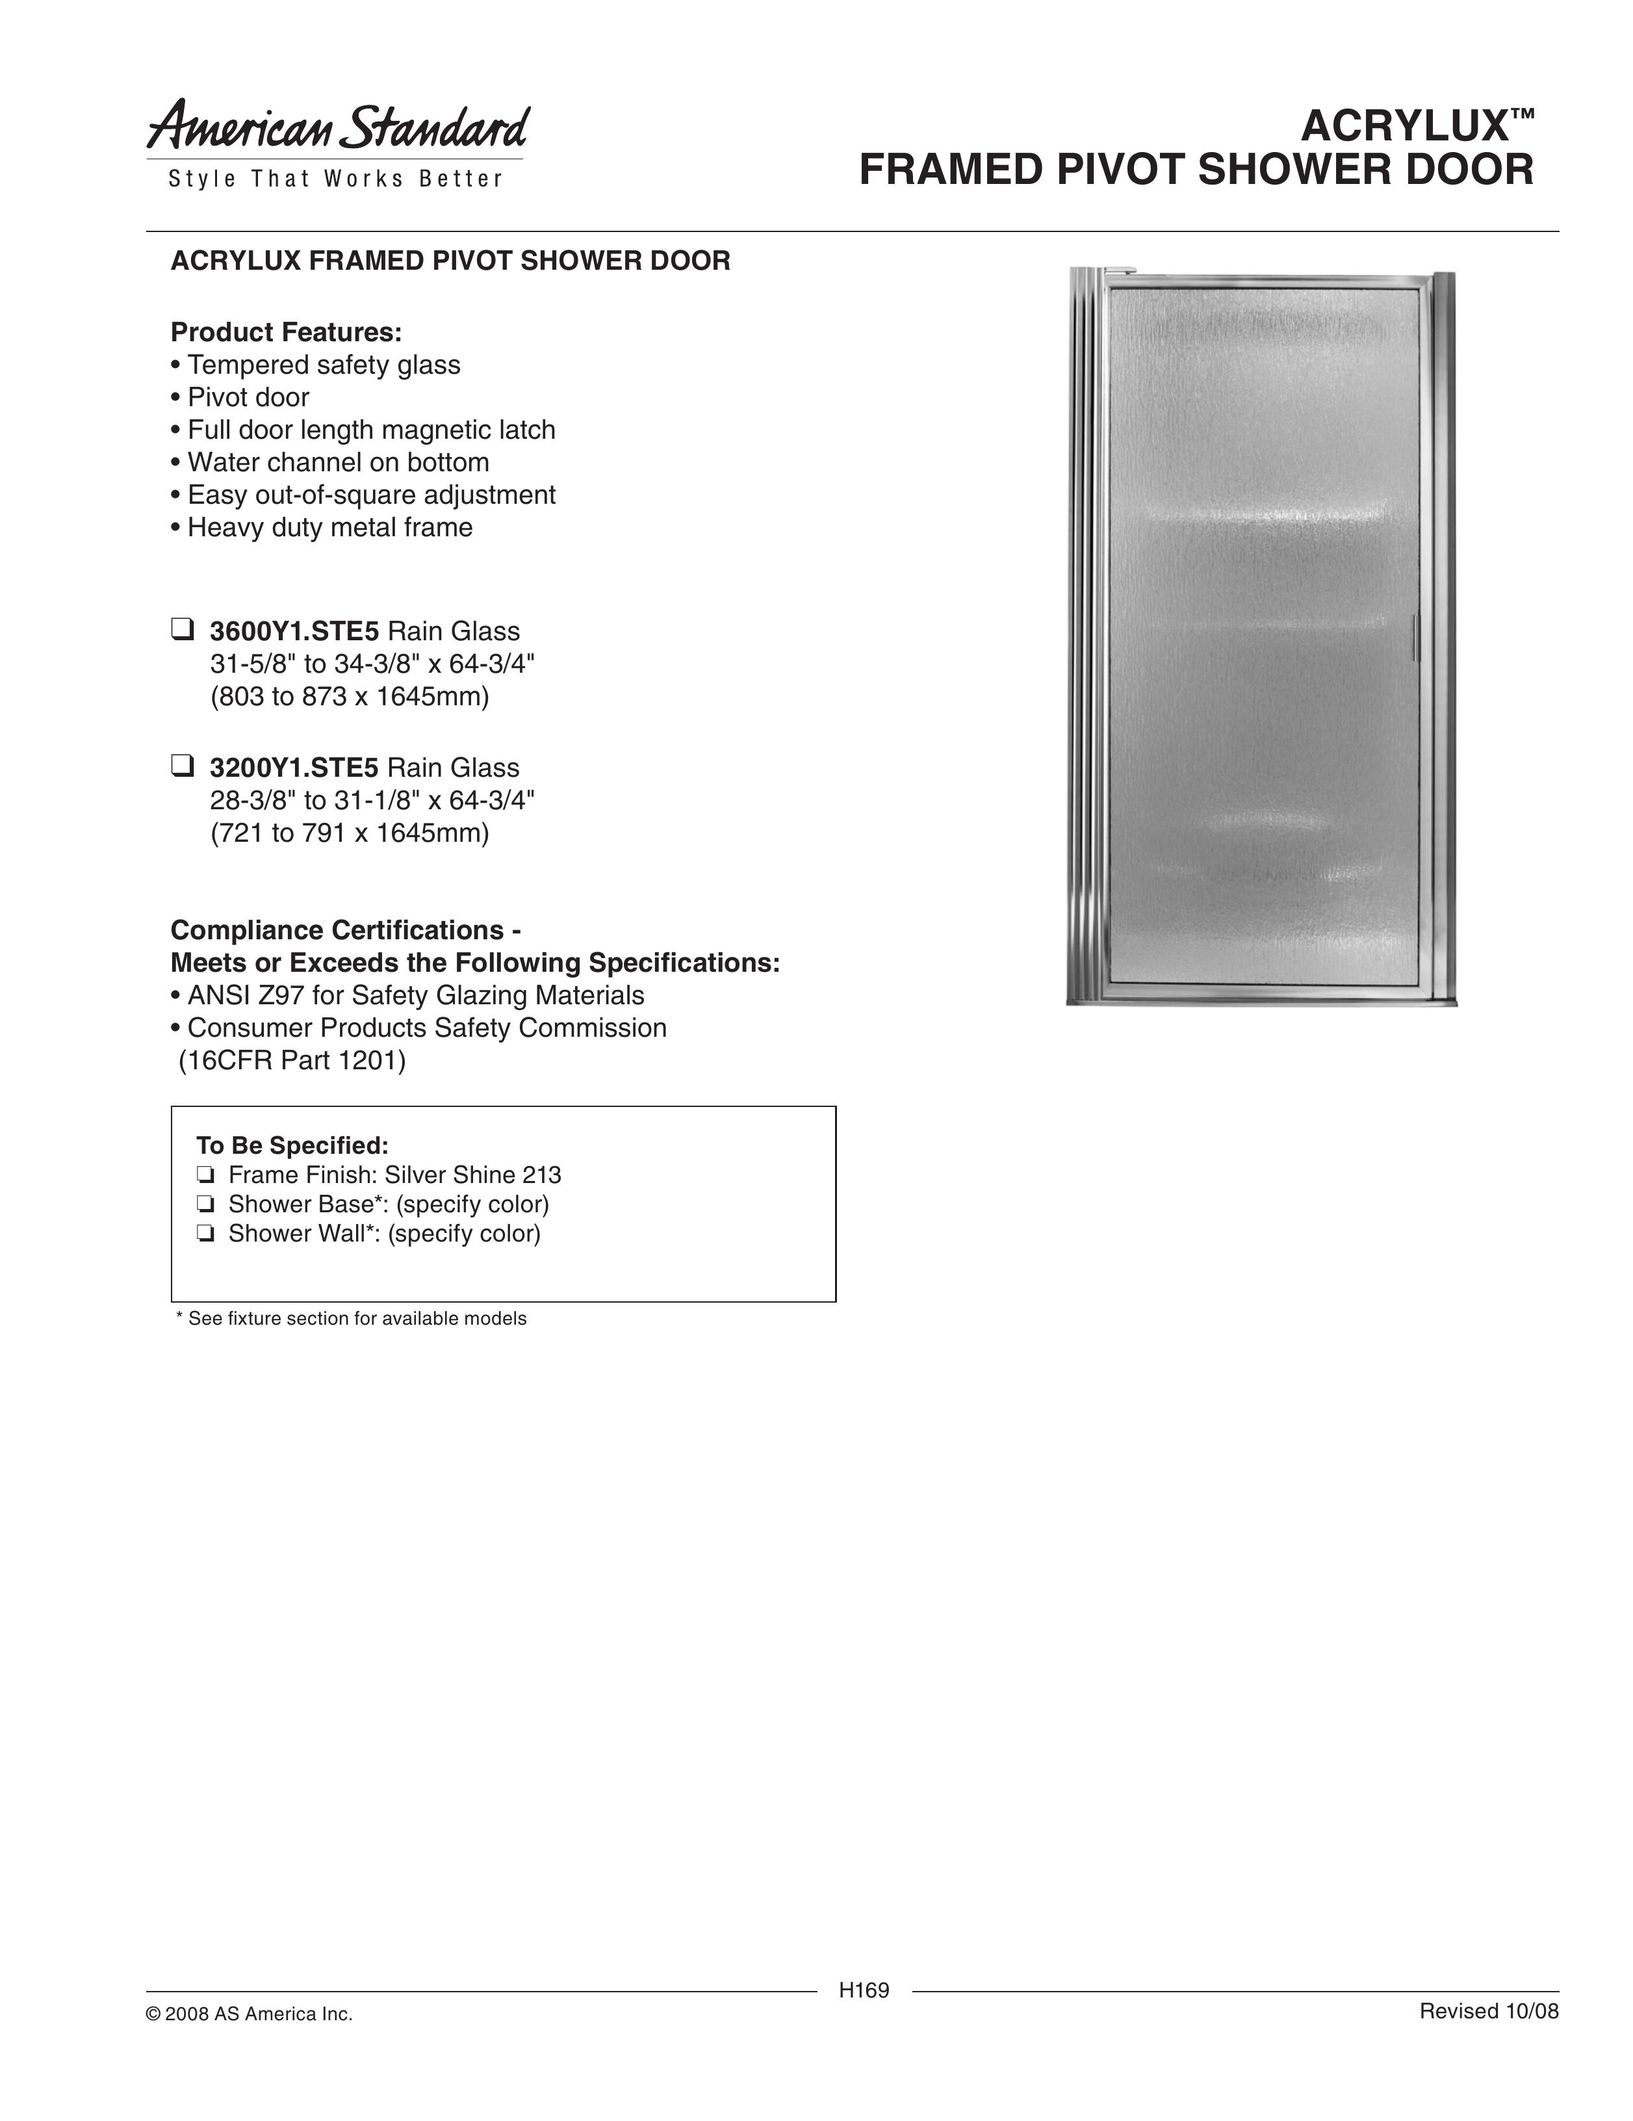 American Standard 3200Y1.STE5 Door User Manual